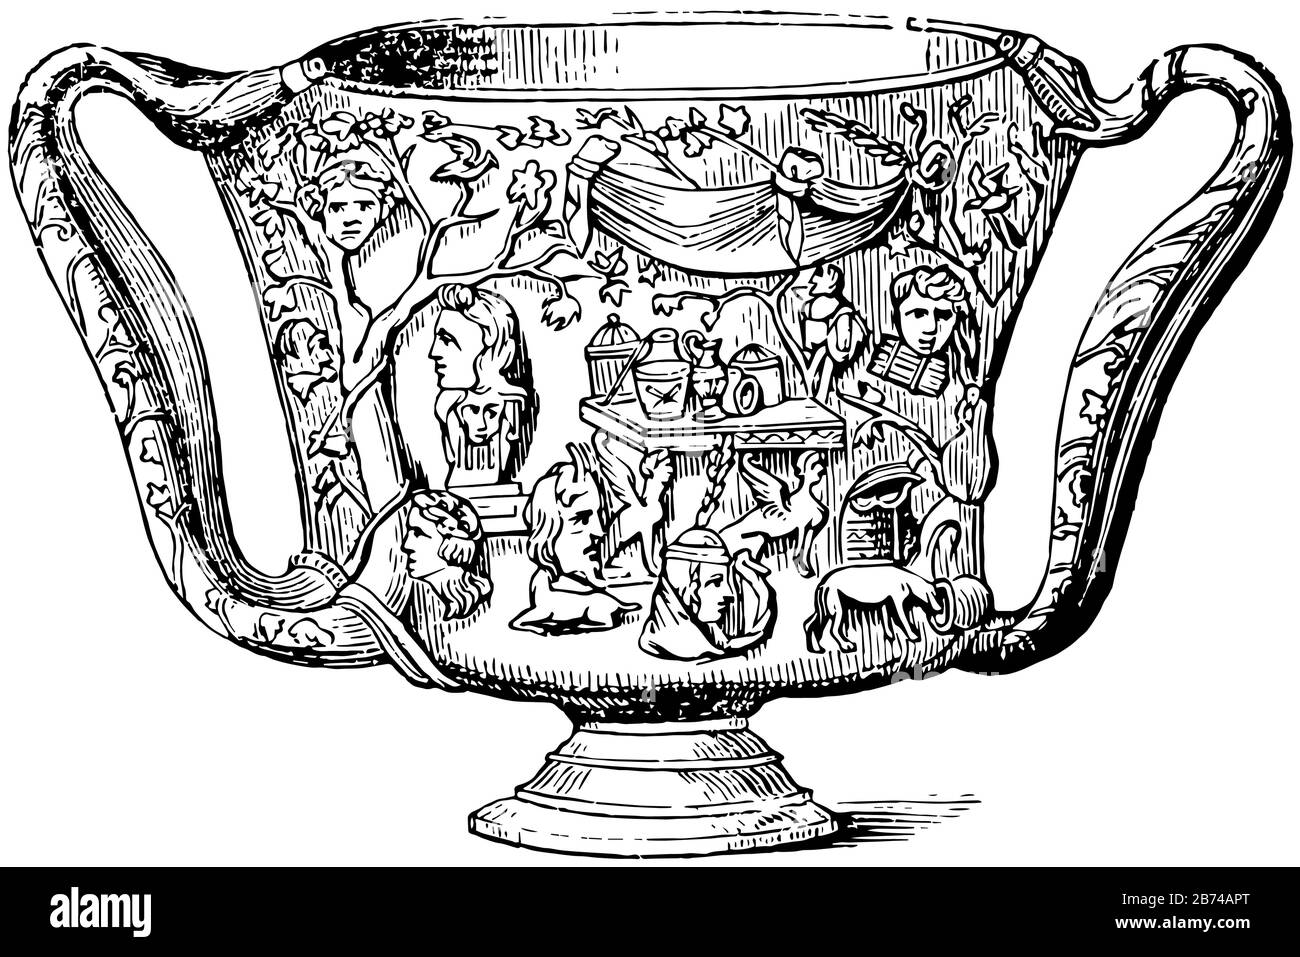 El carcesio era un vaso de precipitado o vaso de beber y utilizado por los griegos en tiempos muy tempranos, era muy empleado en libaciones de vino o leche o sangre y hon Ilustración del Vector